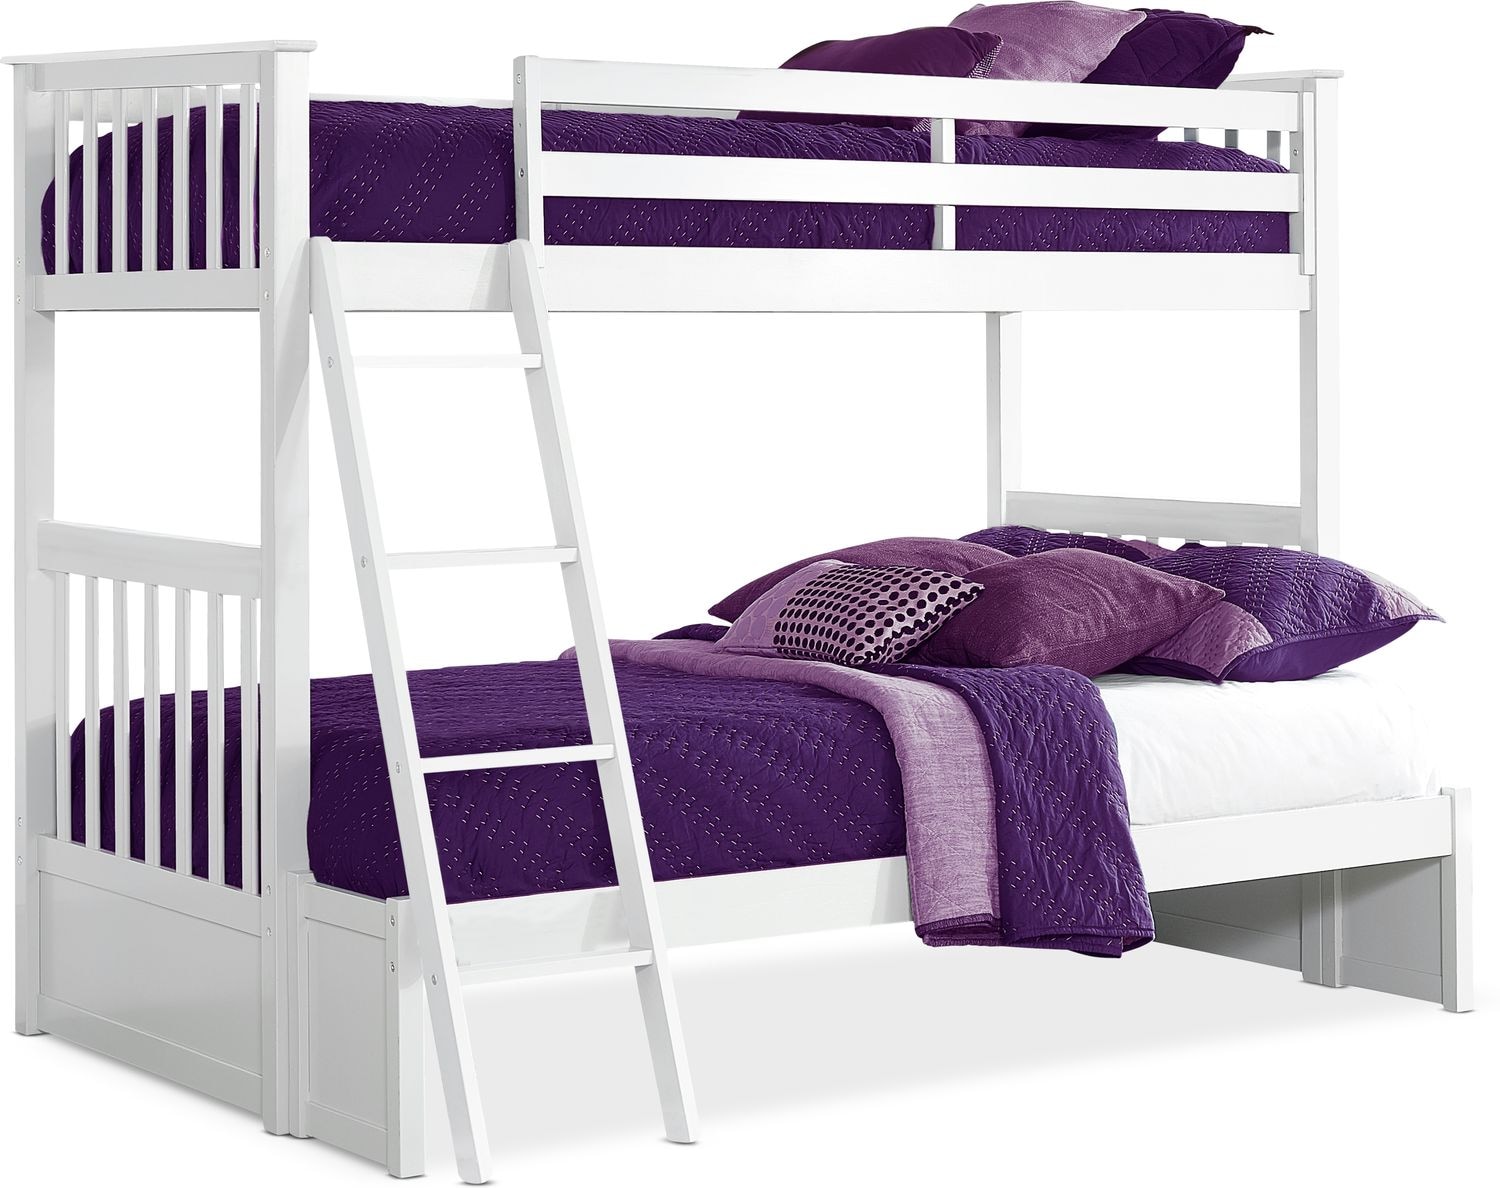 city furniture bunk beds